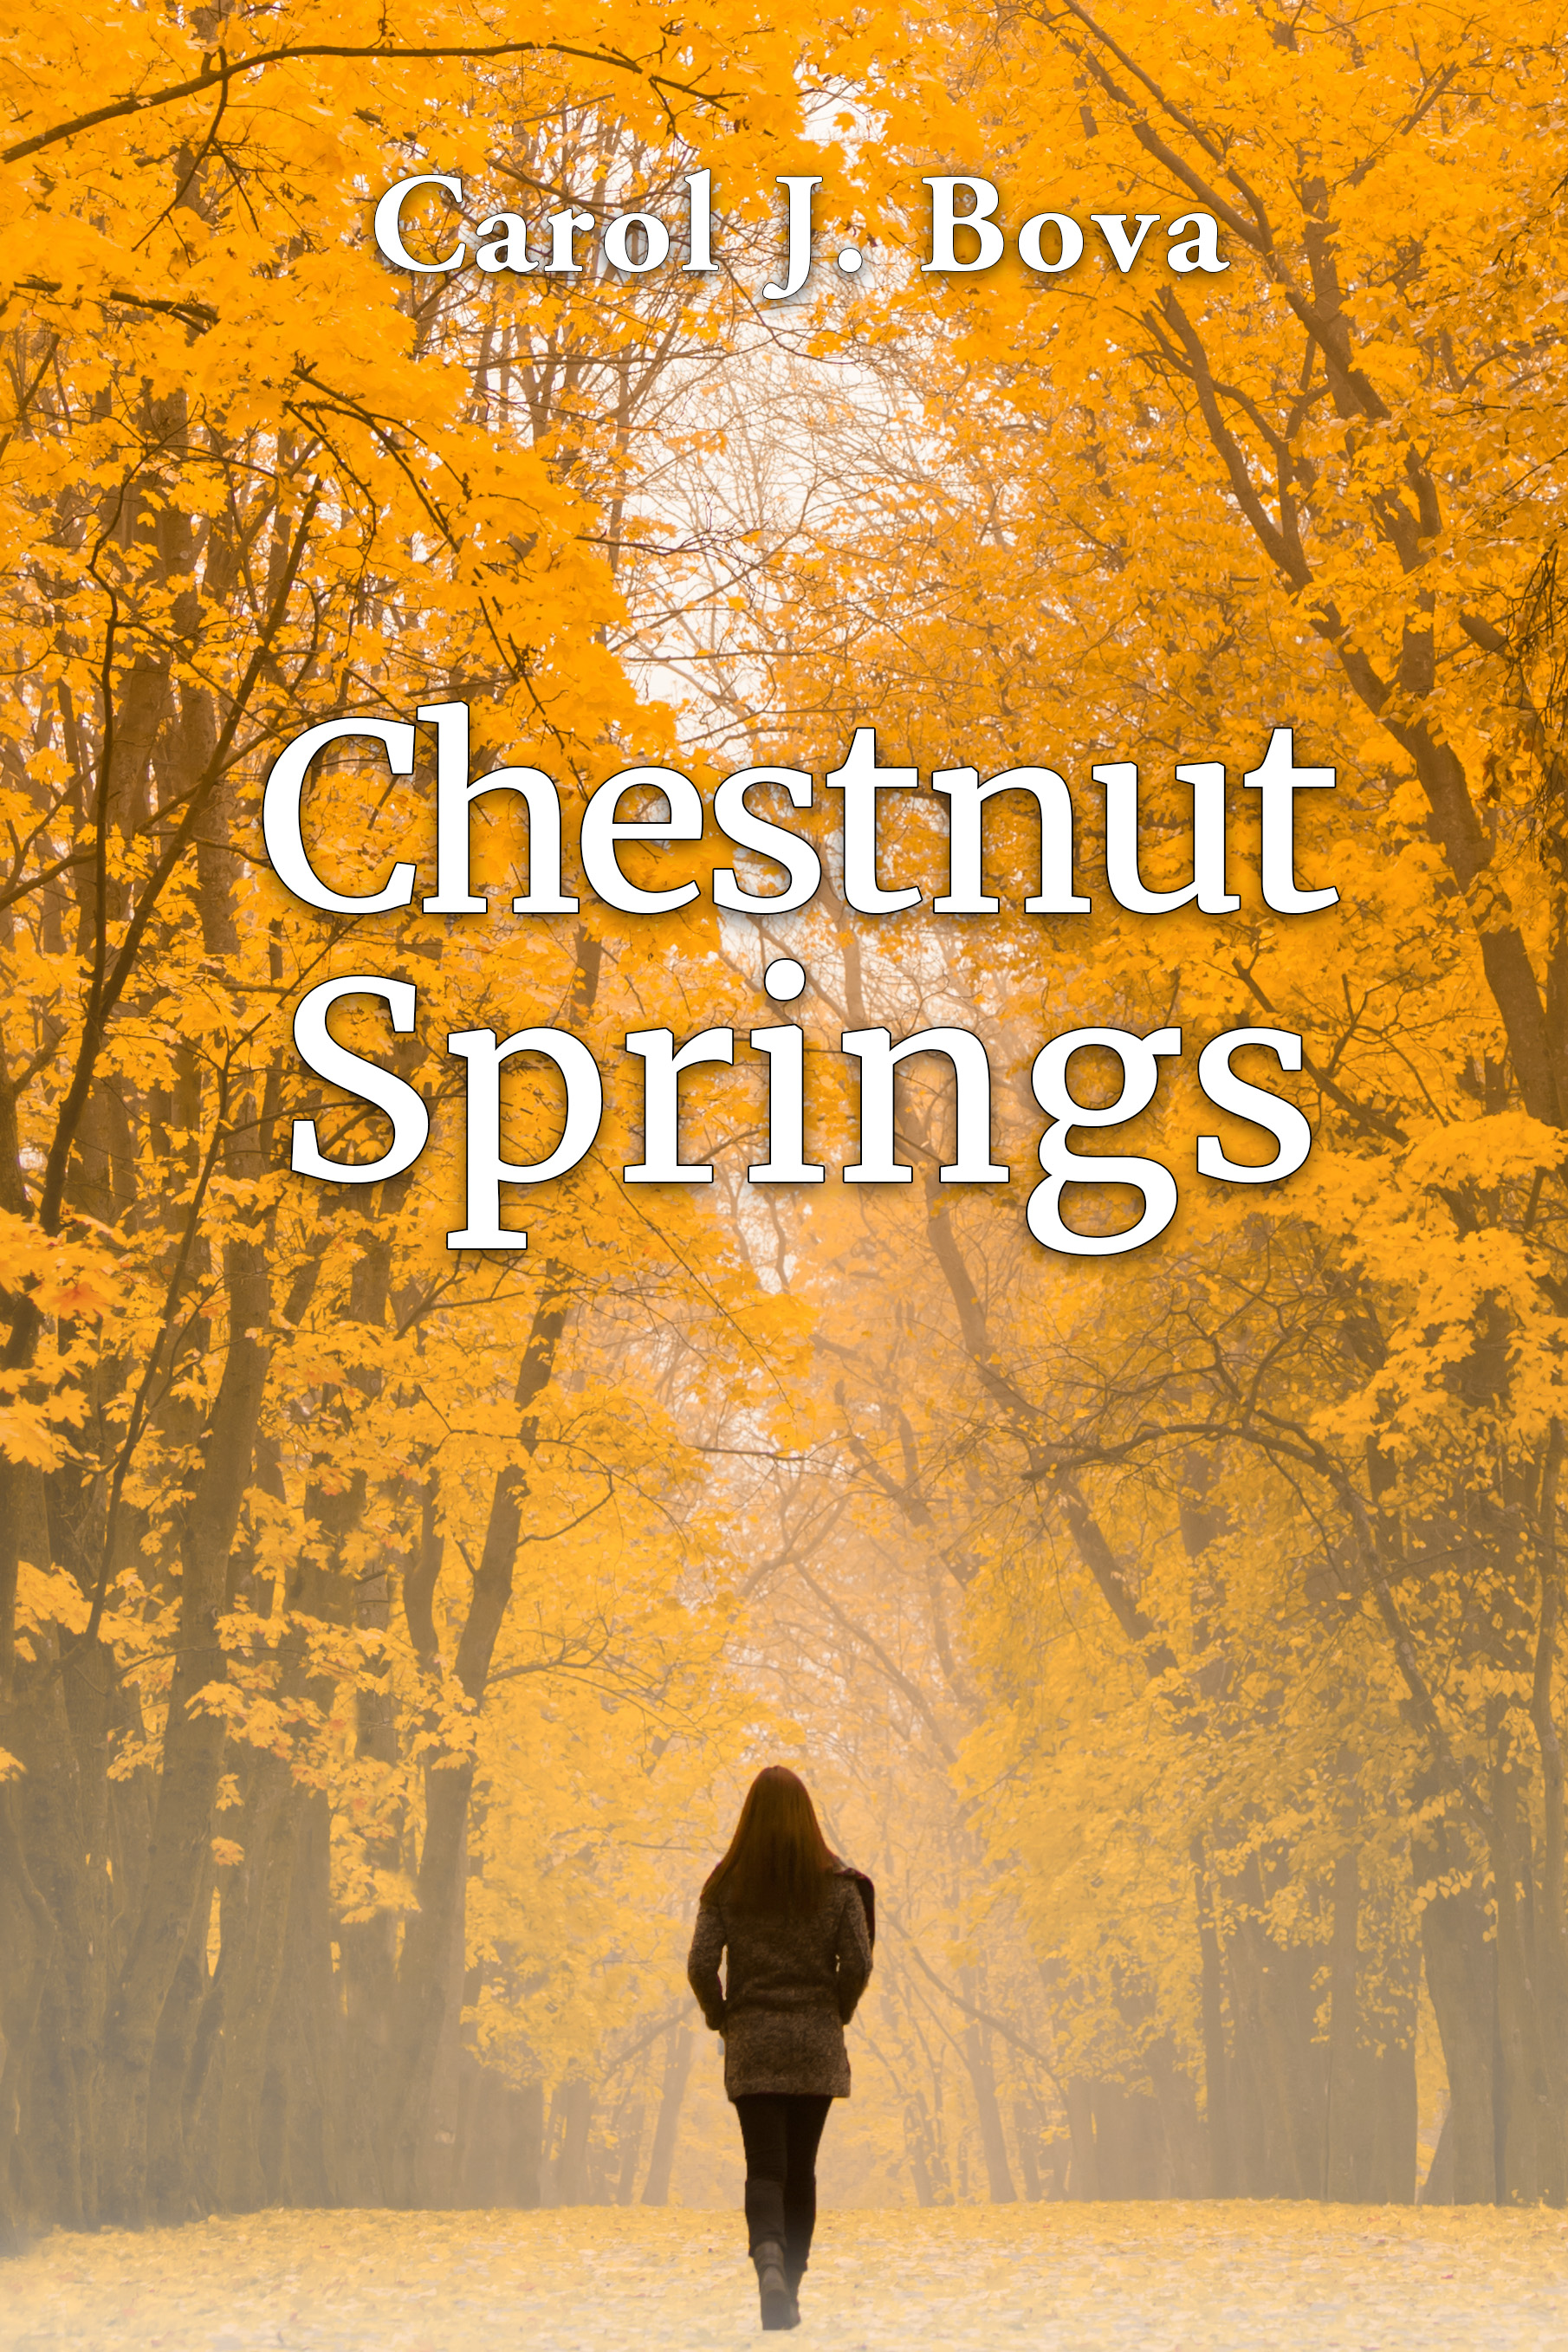 Chestnut Springs — A novel by Carol J. Bova